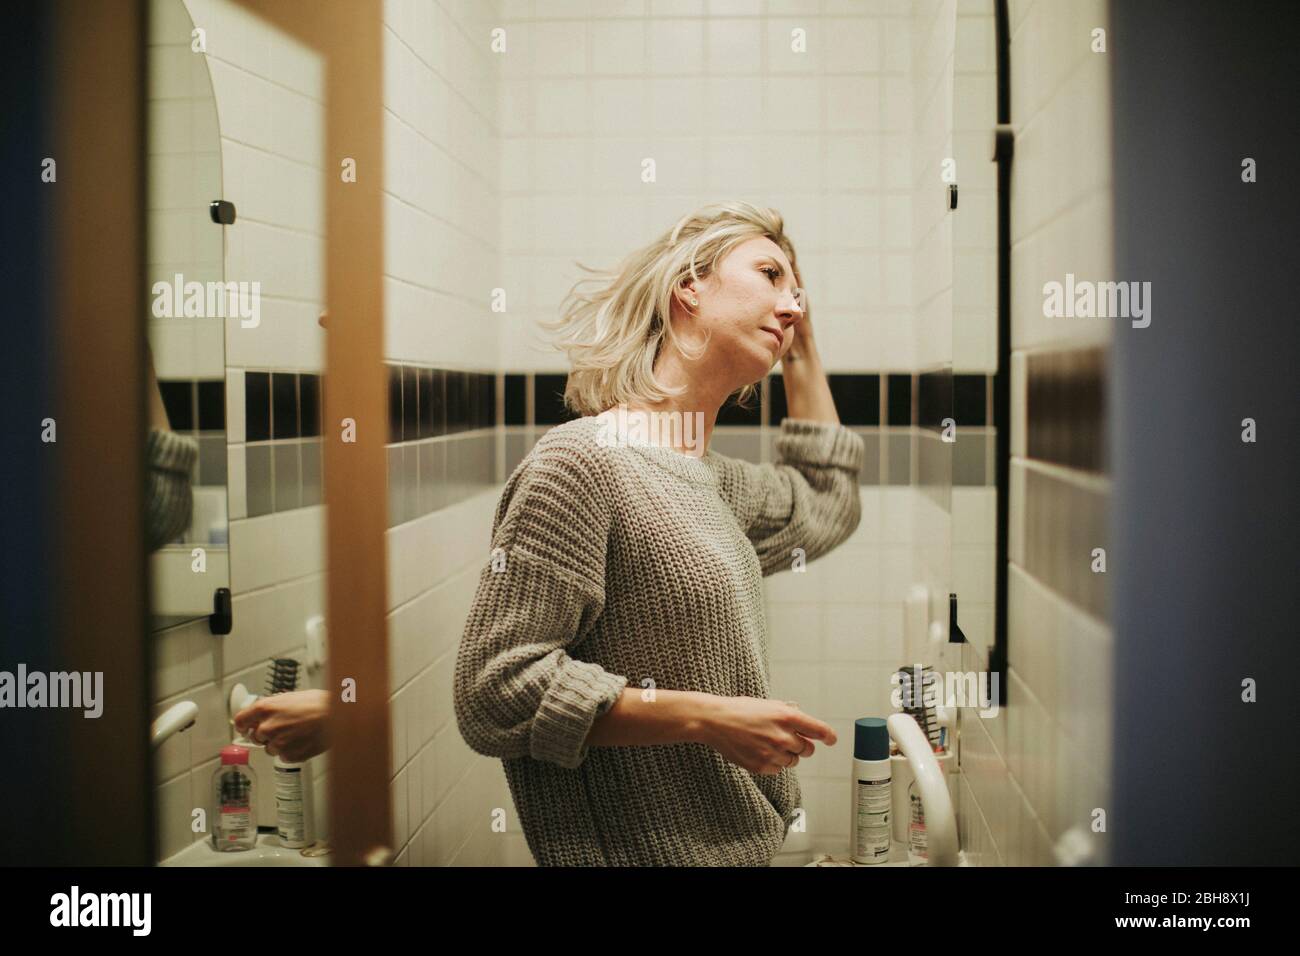 Frau im Badezimmer, betrachtet kritisch ihr Gesicht Stock Photo - Alamy